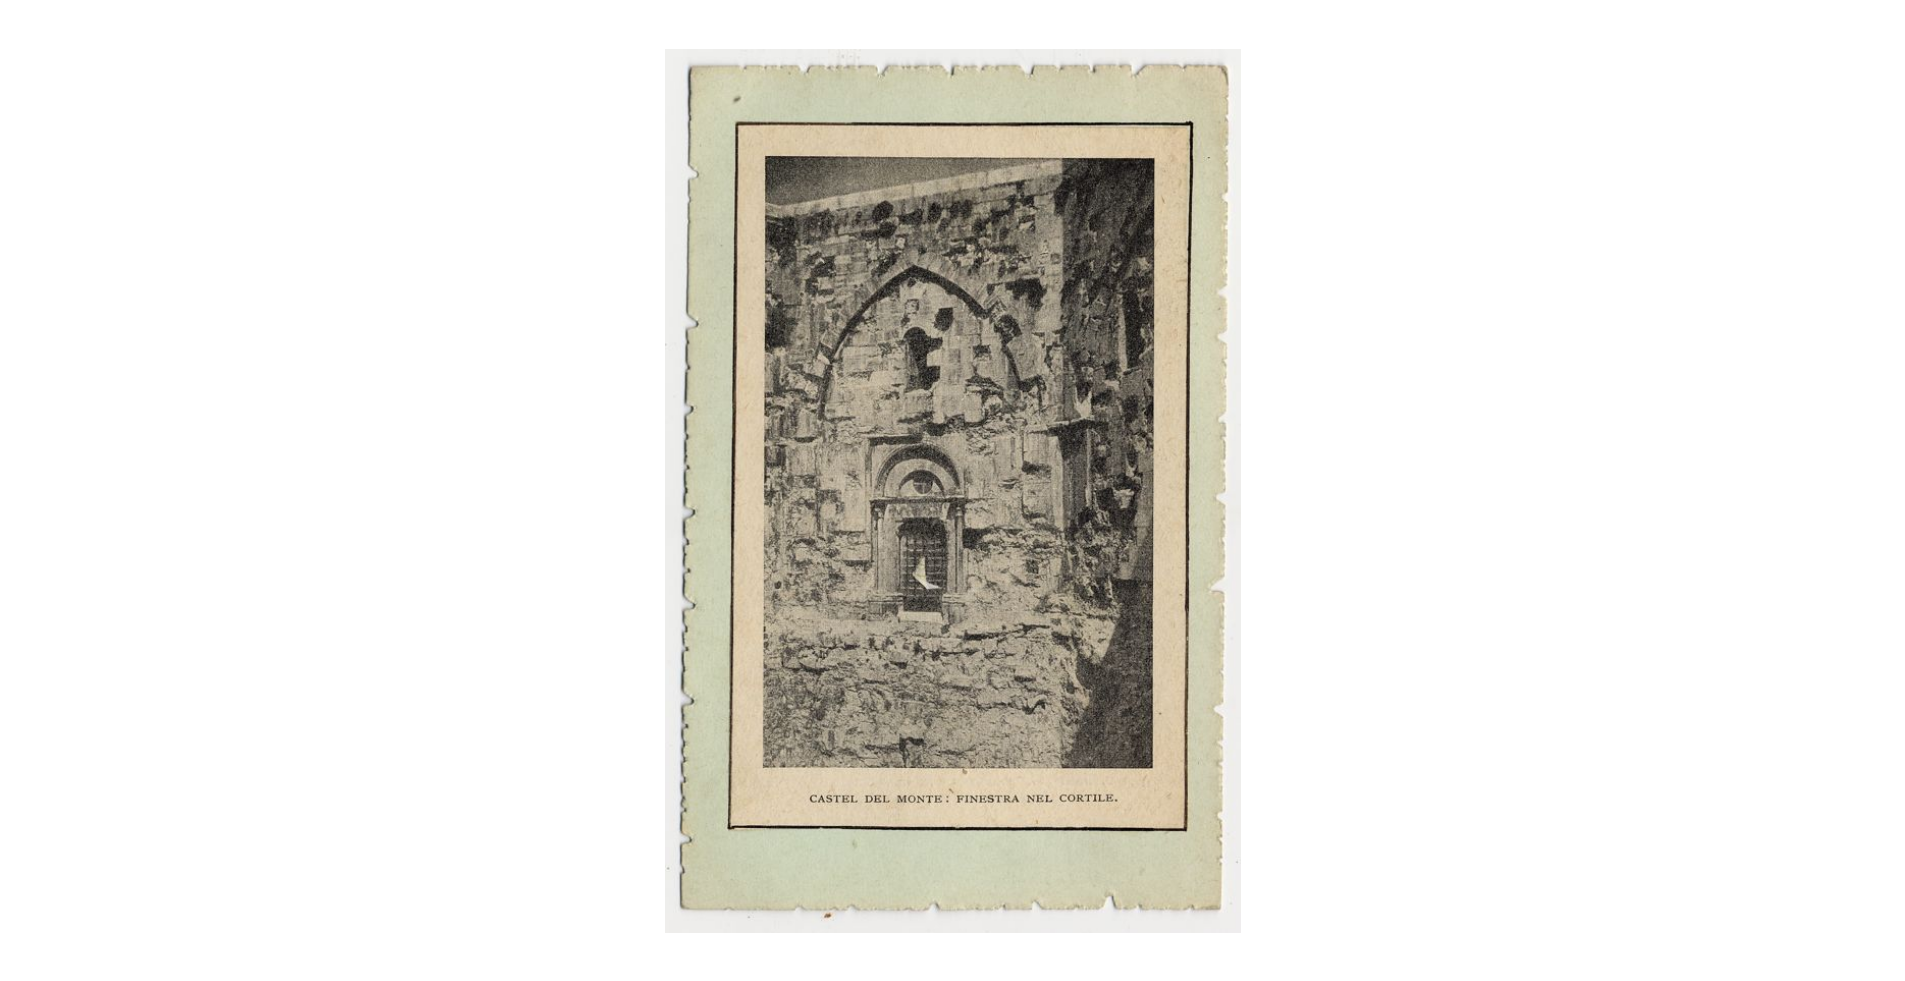 Fotografo non identificato, Andria - Castel del Monte - Finestra nel cortile, 1910-1920, cartolina, FFC003425